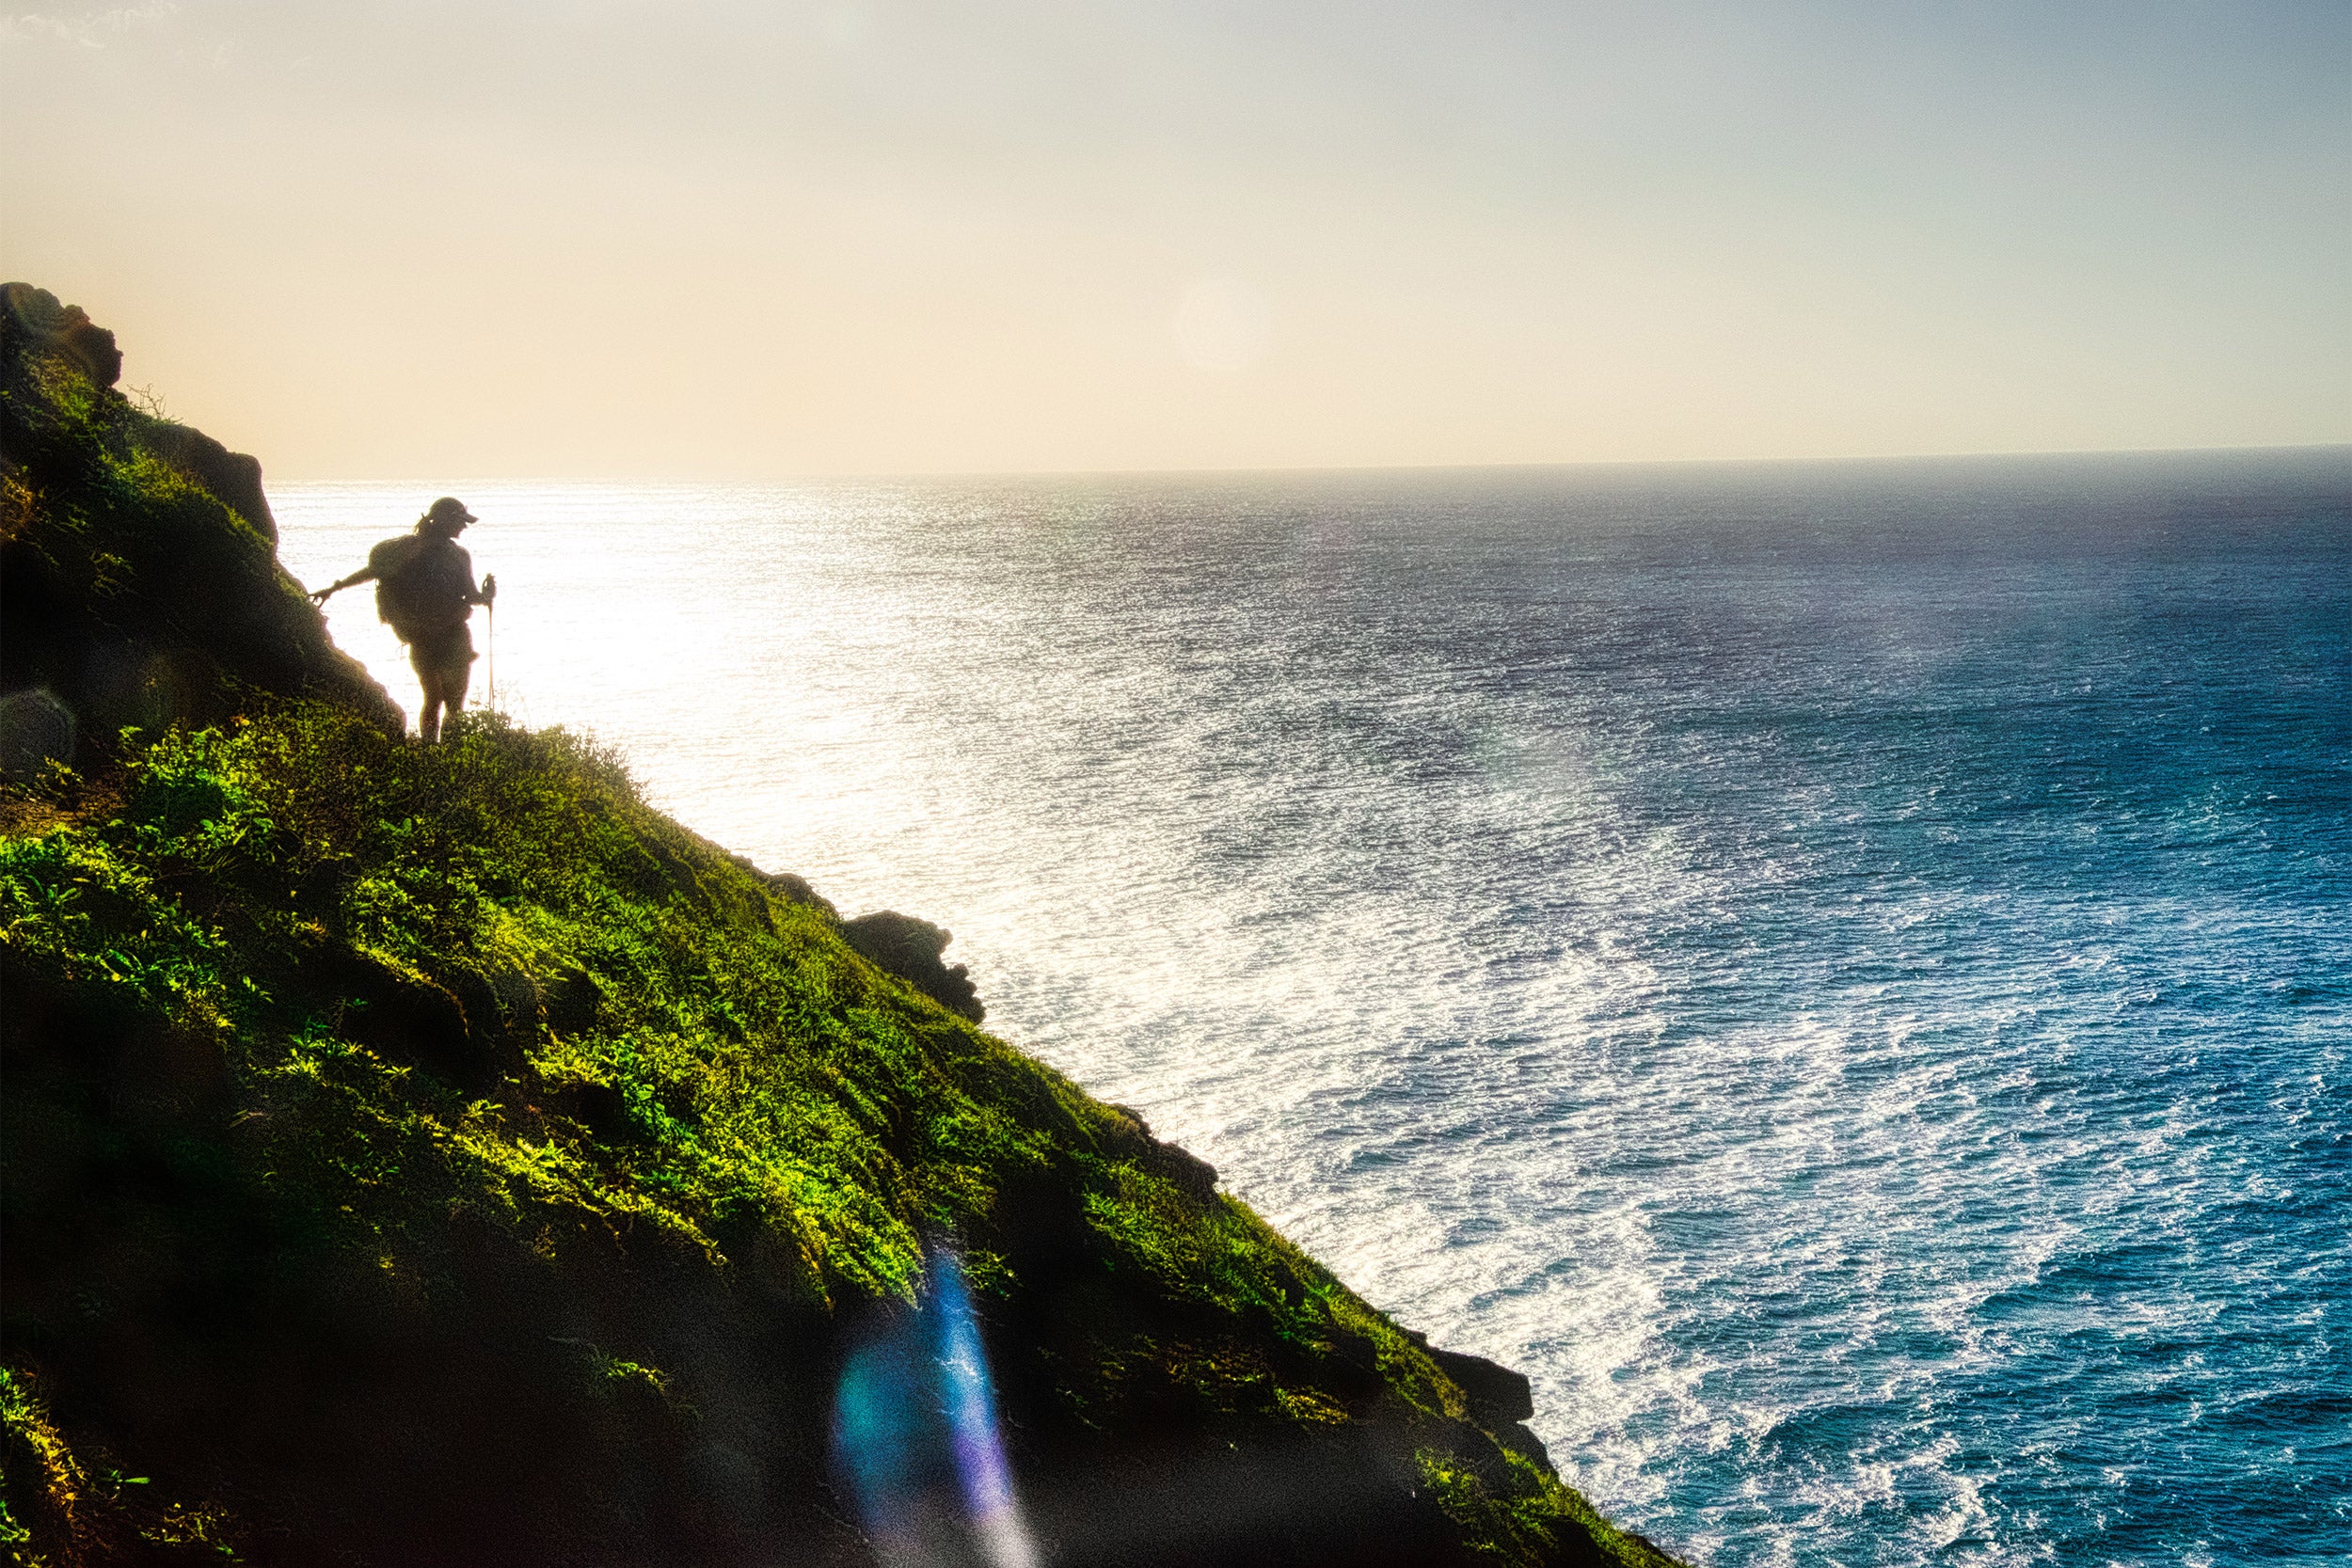 Kirstin Woody Scott on cliff overlooking ocean.